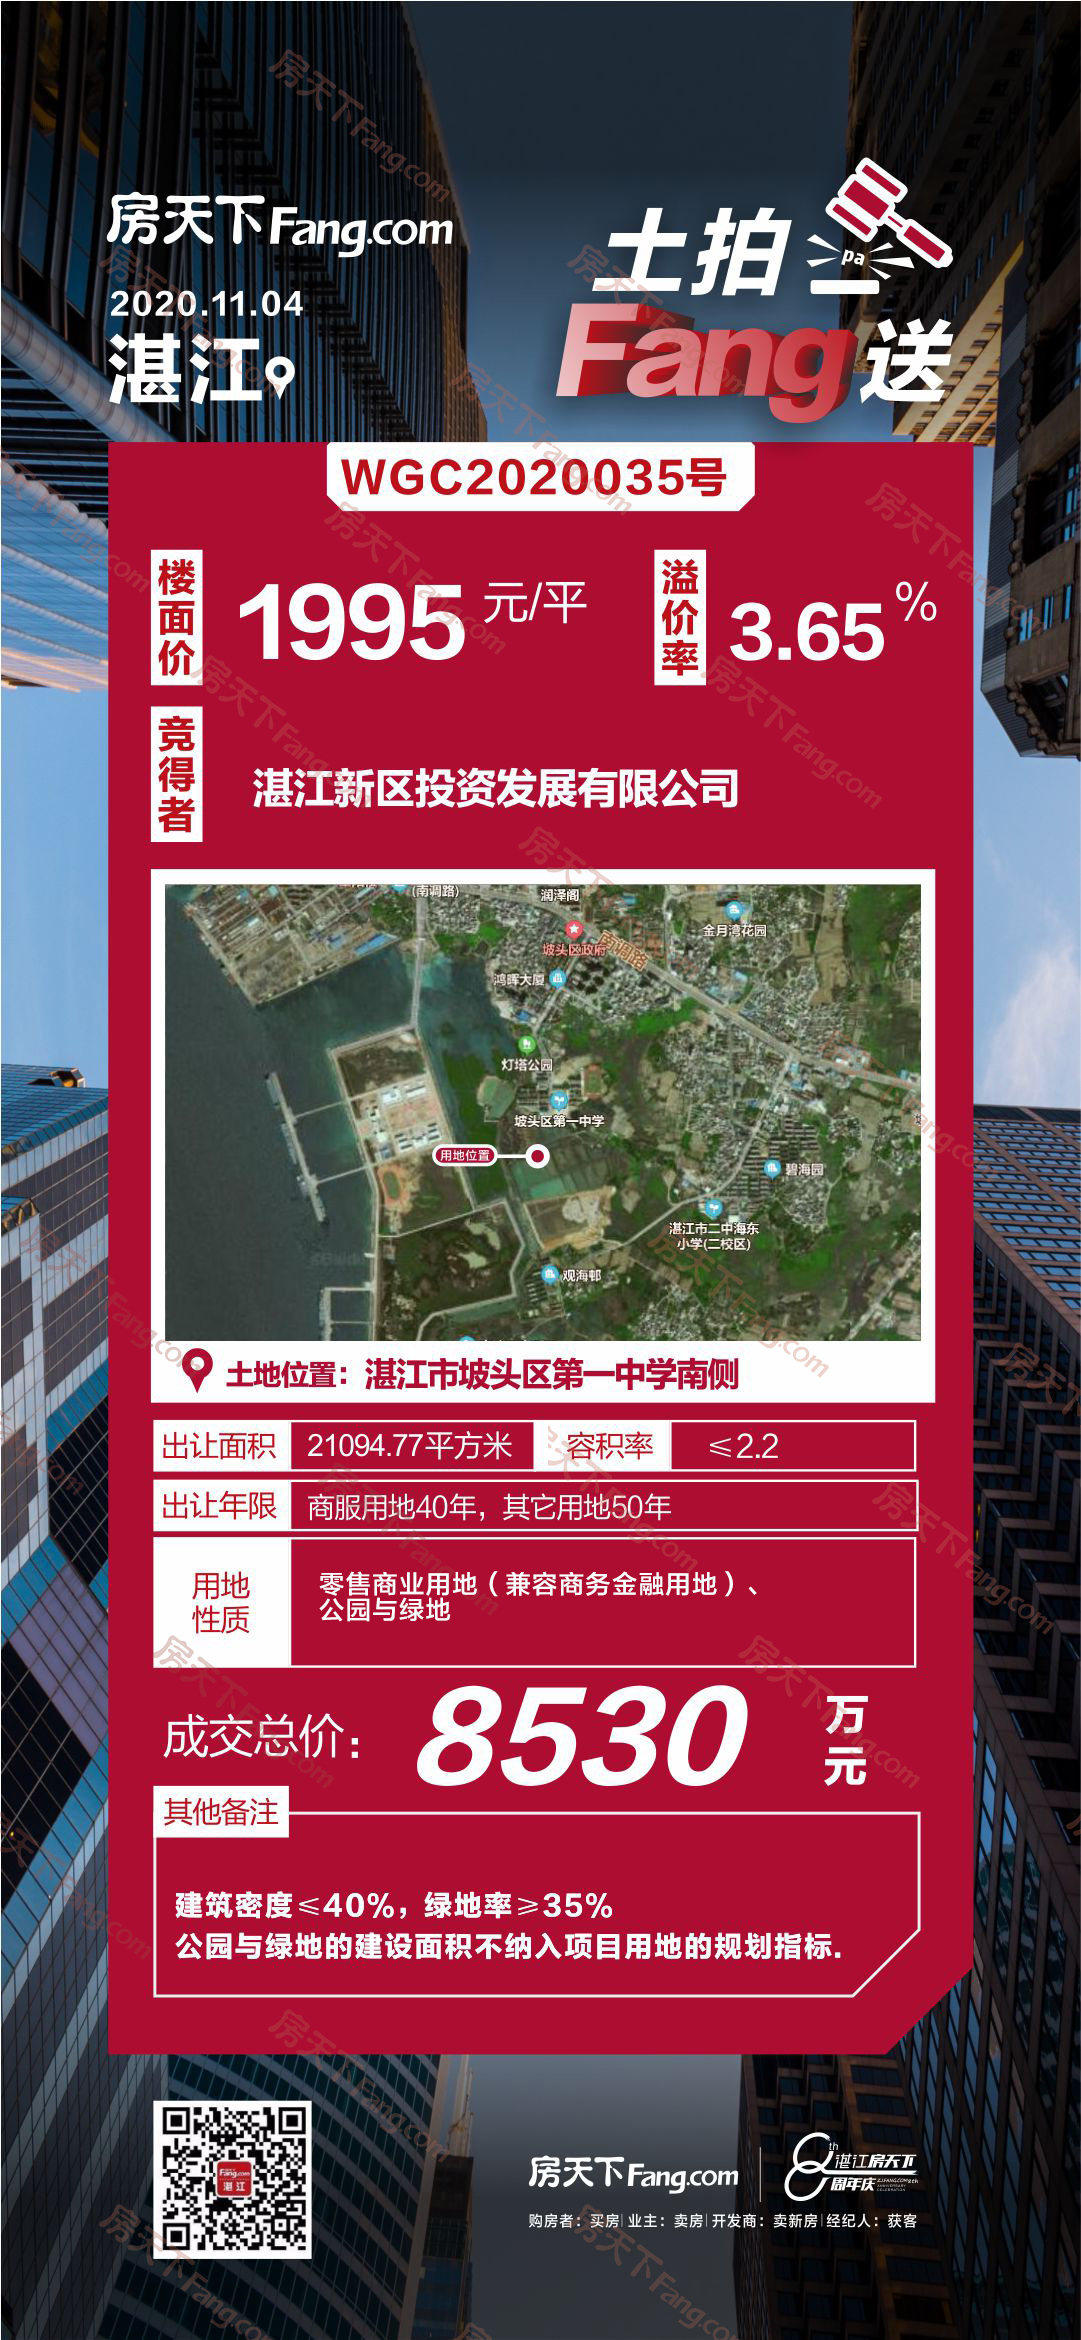 湛江坡头区1宗零售商业用地成功出让 总出让面积约2.1万㎡ 总成交价8530万元